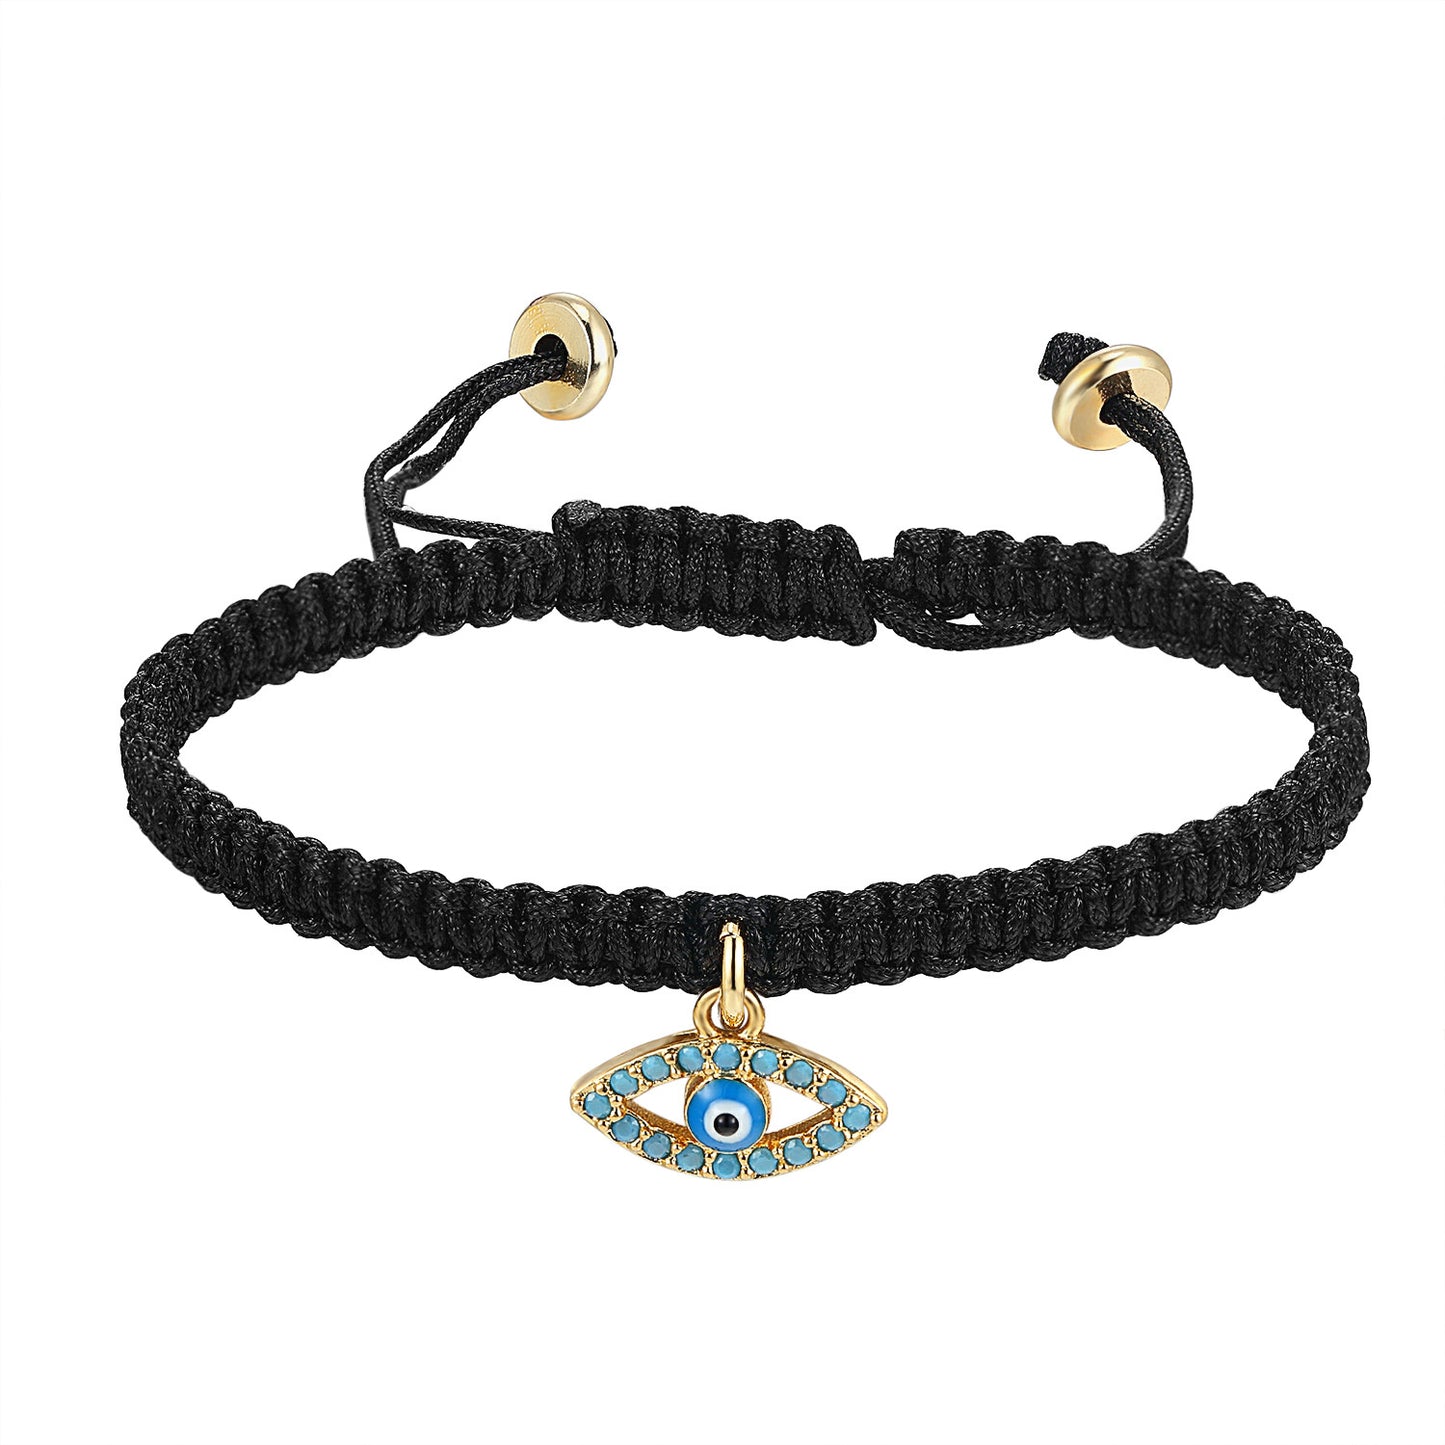 Religious Evil Eye Charm Braided Black Woven 14k Gold Finish Bracelet Turquoise Stones